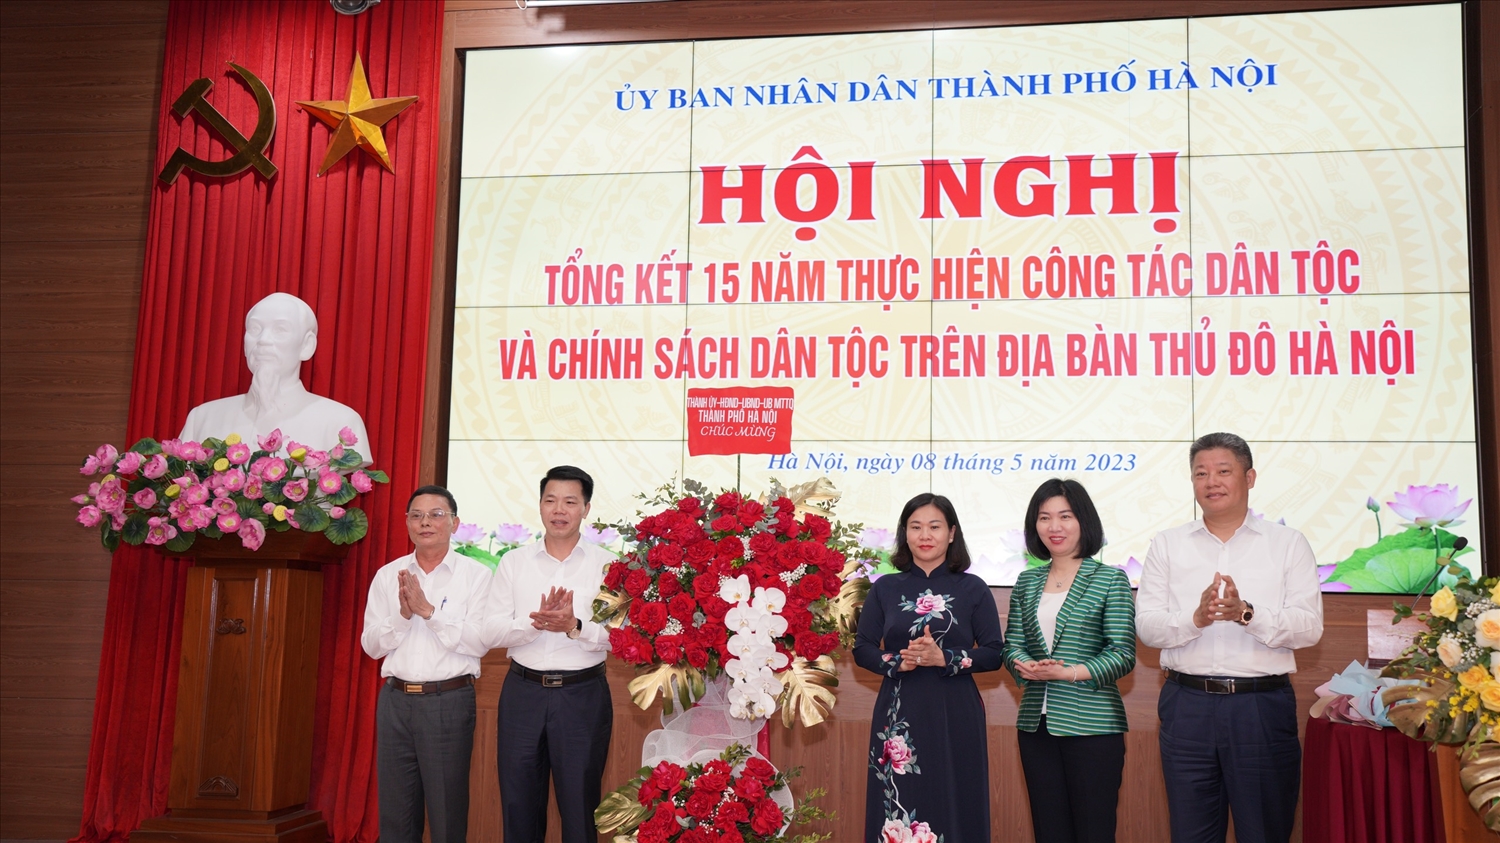 TP. Hà Nội: Tổng kết 15 năm thực hiện công tác dân tộc 2